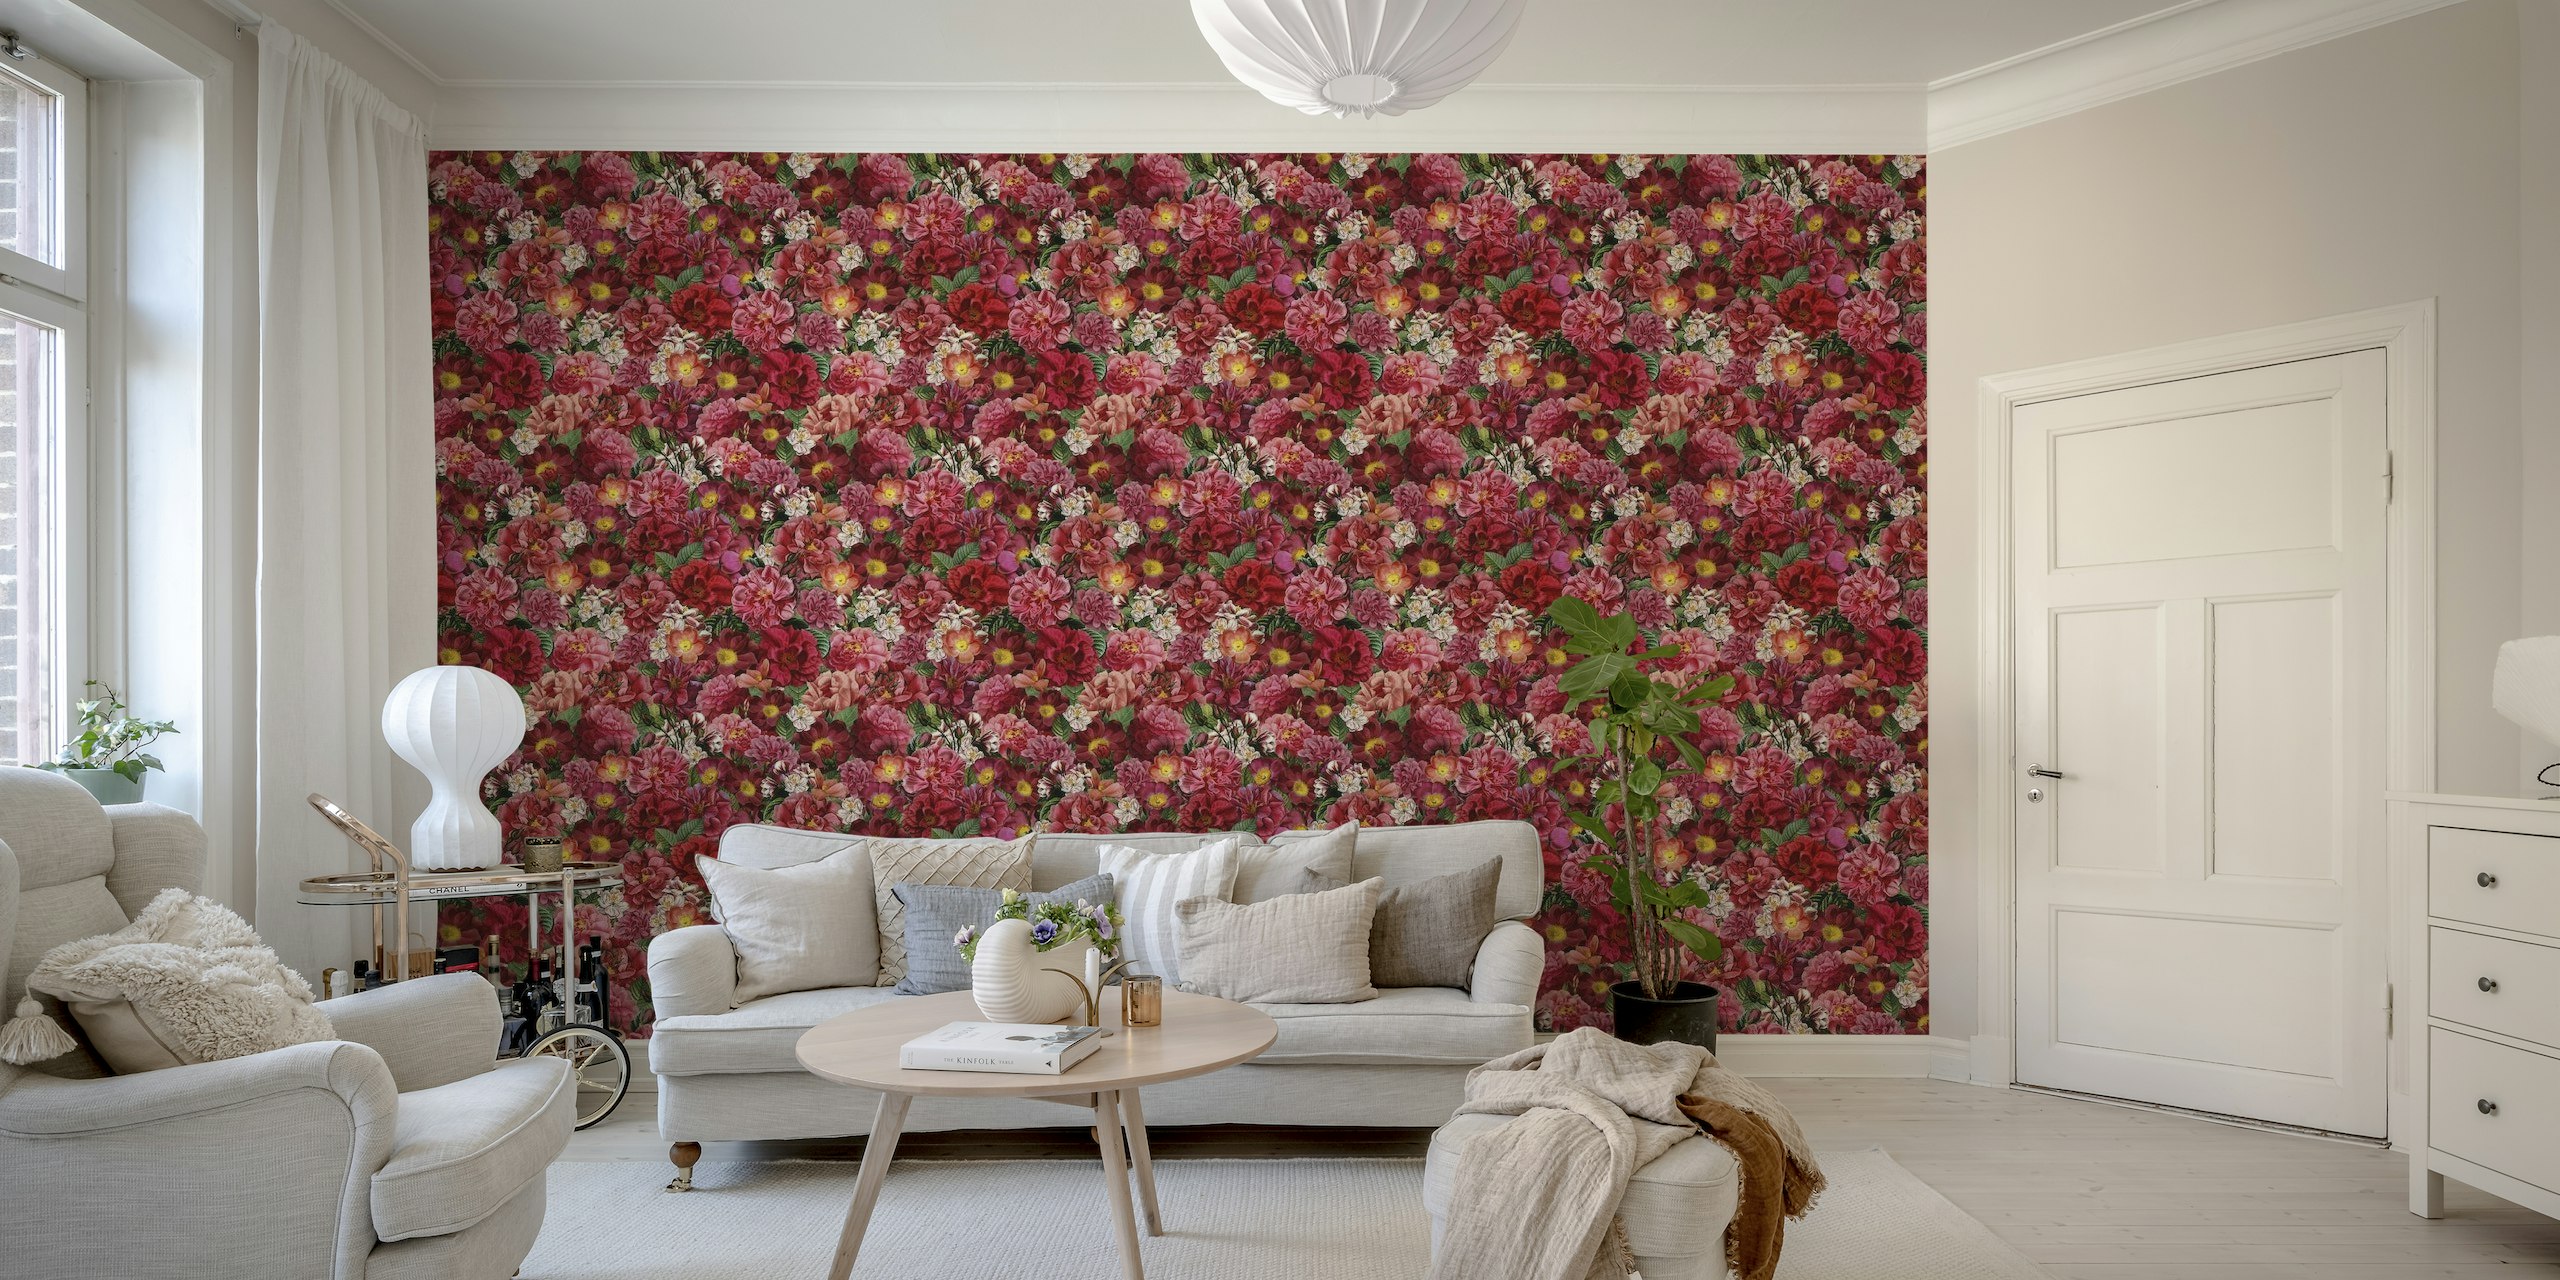 Scarlet Flowers Garden wallpaper